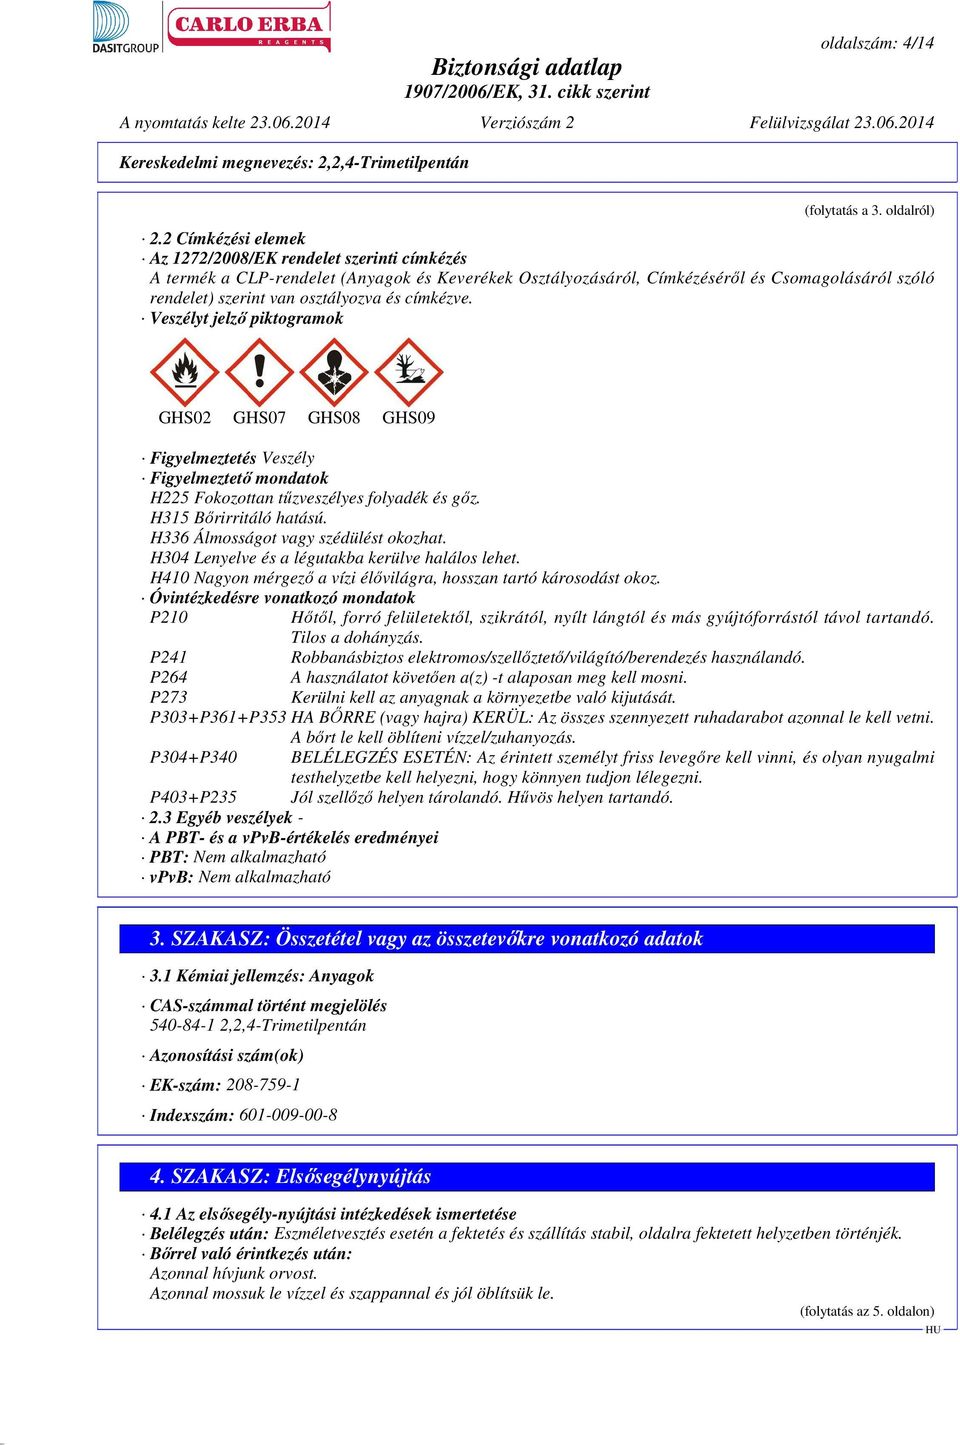 címkézve. Veszélyt jelző piktogramok GHS02 GHS07 GHS08 GHS09 Figyelmeztetés Veszély Figyelmeztető mondatok H225 Fokozottan tűzveszélyes folyadék és gőz. H315 Bőrirritáló hatású.